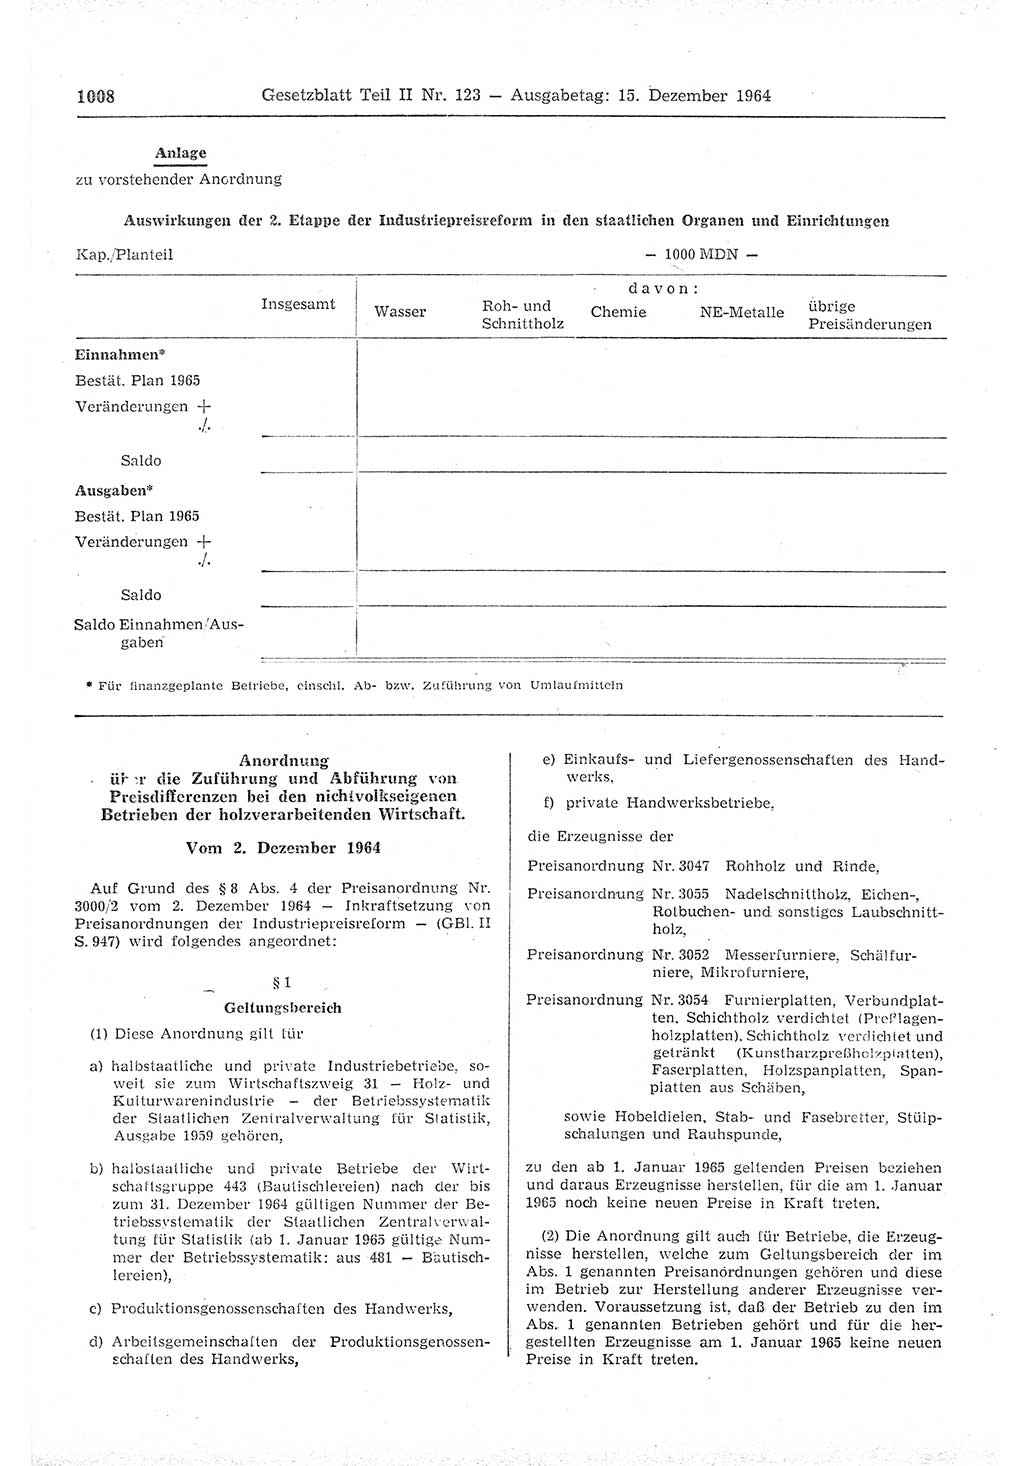 Gesetzblatt (GBl.) der Deutschen Demokratischen Republik (DDR) Teil ⅠⅠ 1964, Seite 1008 (GBl. DDR ⅠⅠ 1964, S. 1008)